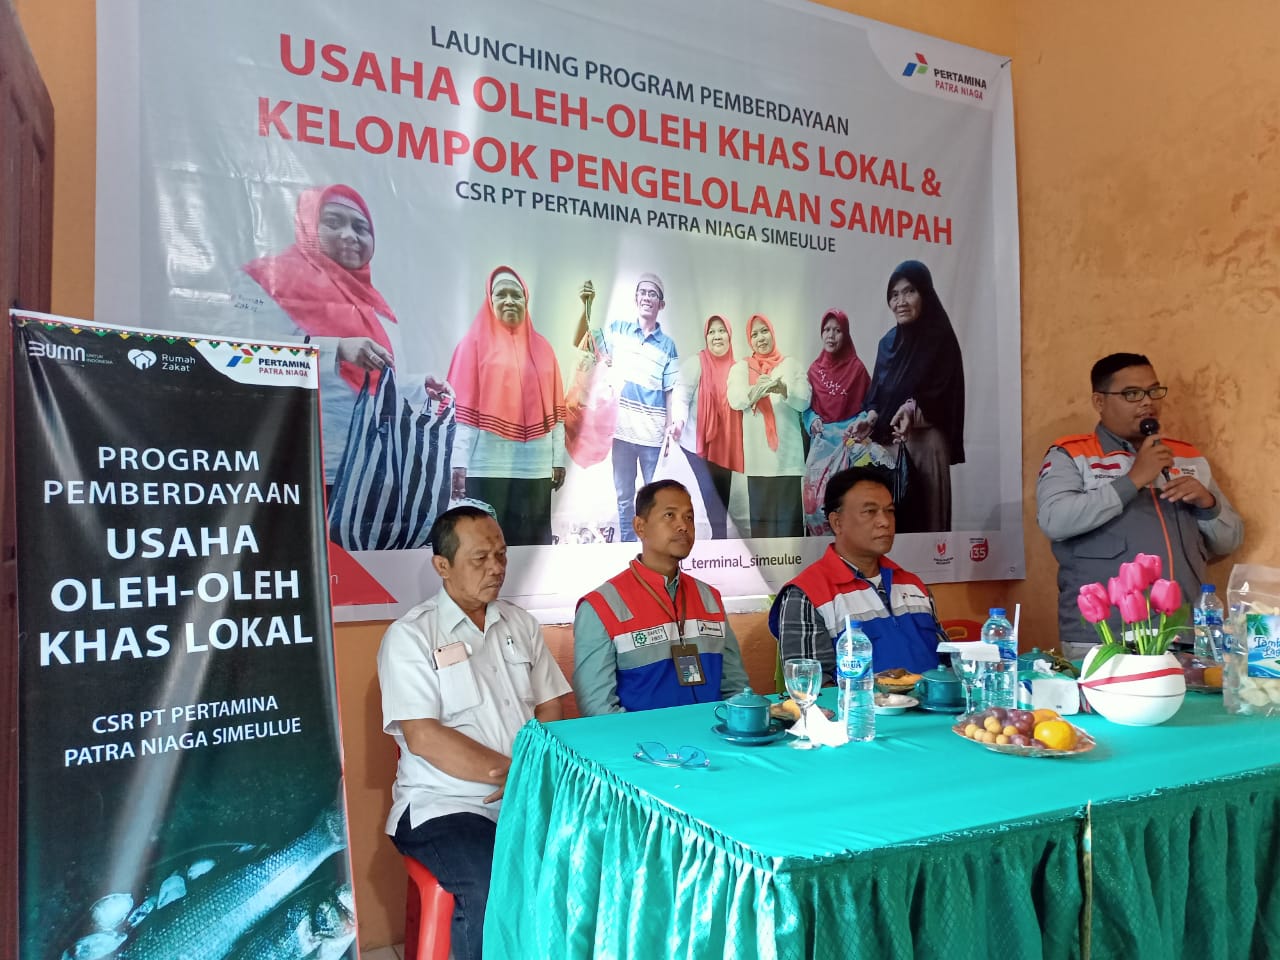 Rumah Zakat Cabang Aceh Gelar Launching Program Pemberdayaan Usaha Oleh-oleh Khas Lokal Dan Pengelolaan Sampah